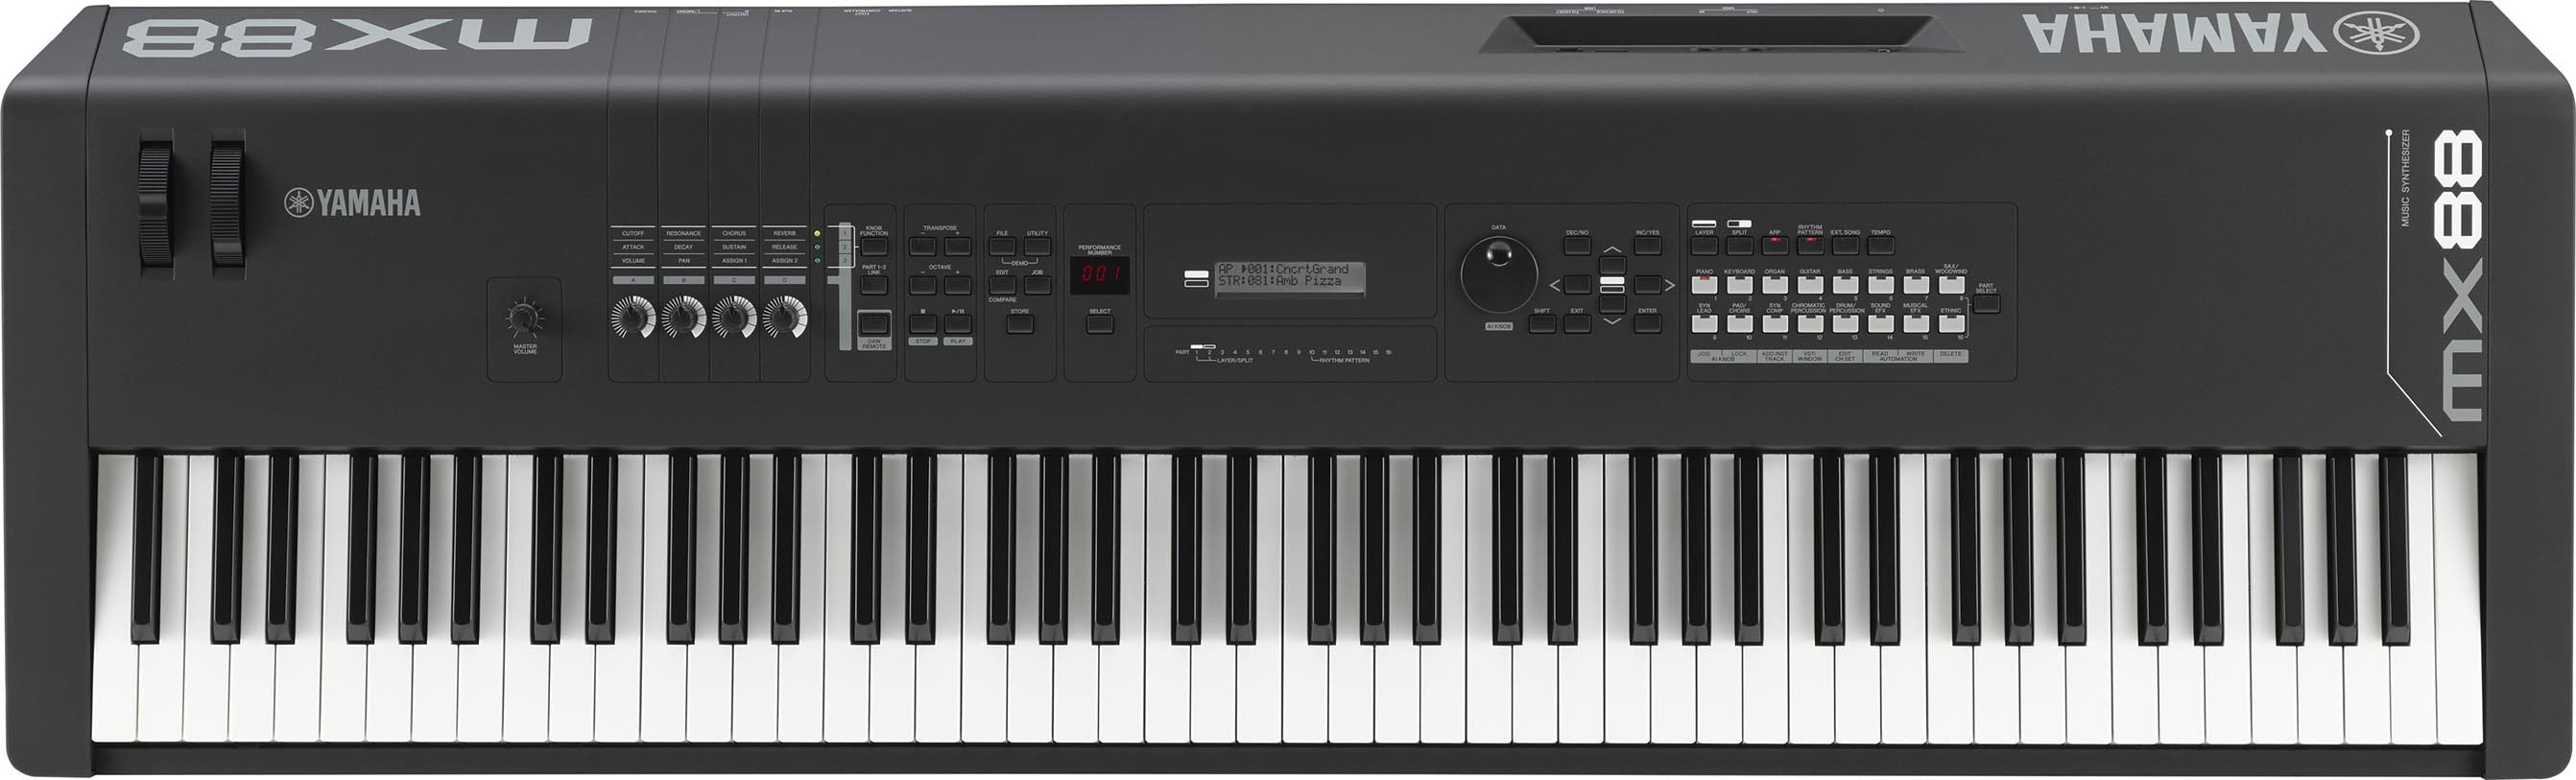 Yamaha Mx88 - Synthesizer - Main picture